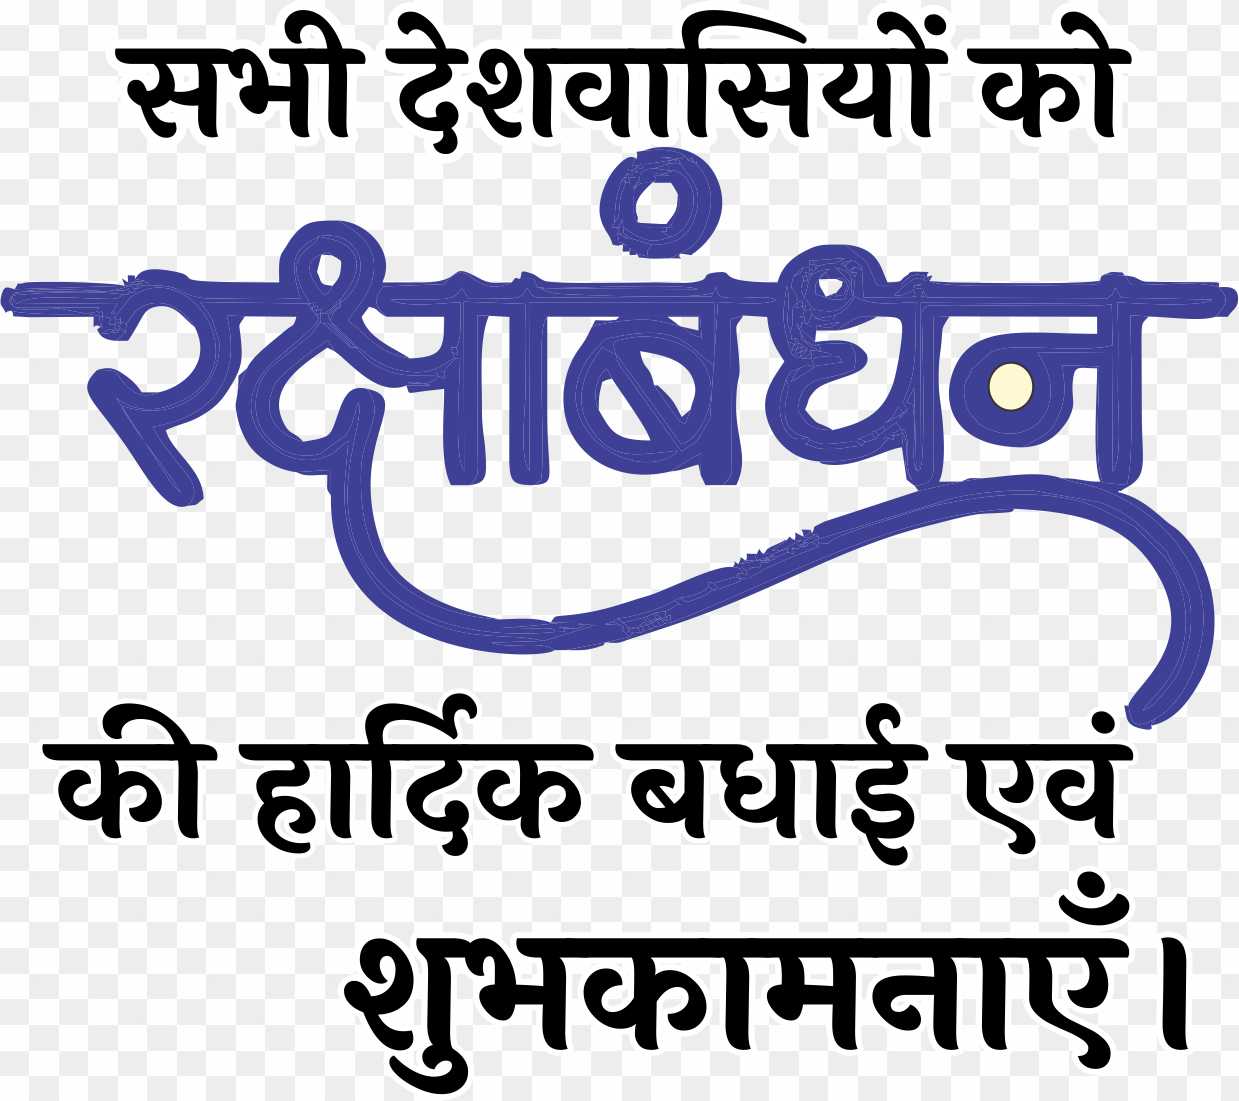 raksha Bandhan ki hardik shubhkamnaen PNG image, happy raksha Bandhan text PNG 